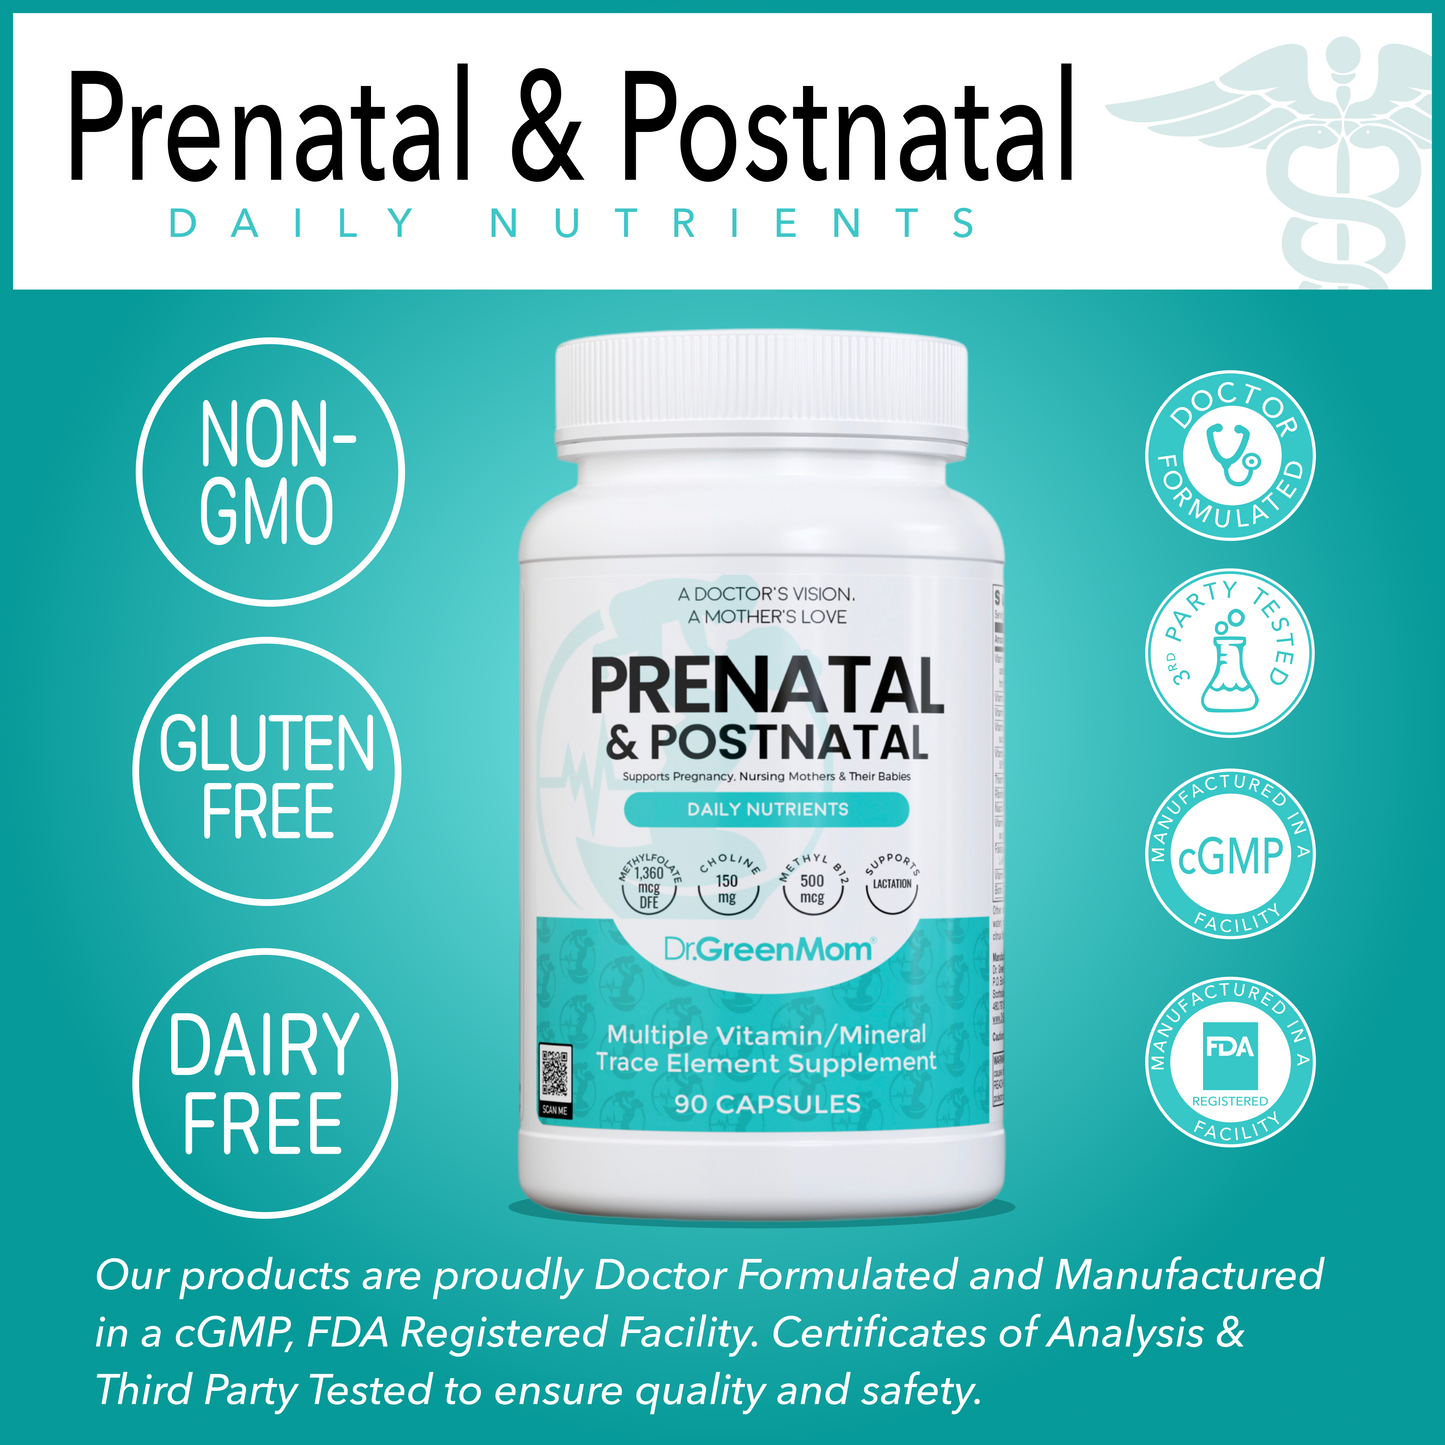 Prenatal & Postnatal Daily Nutrients